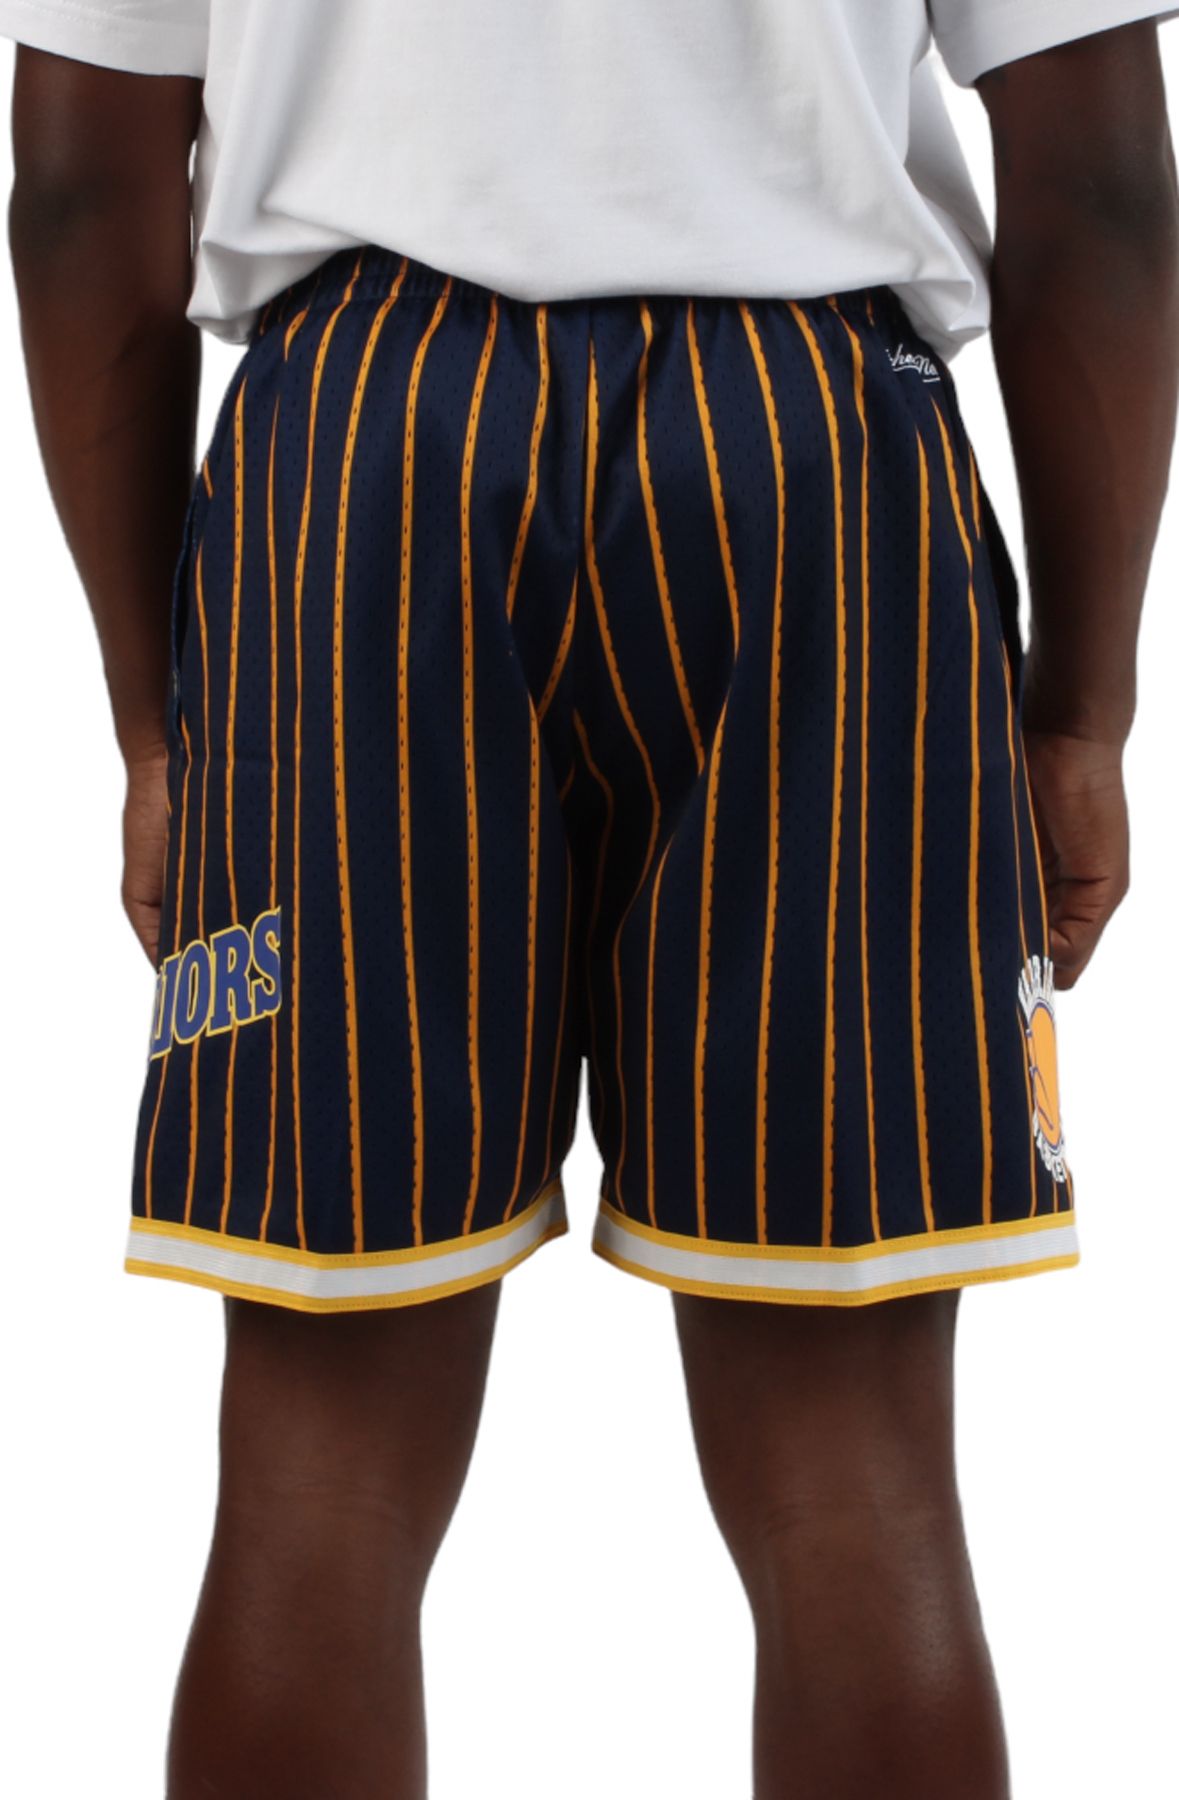 Golden State Warriors Basketball Shorts - NBA